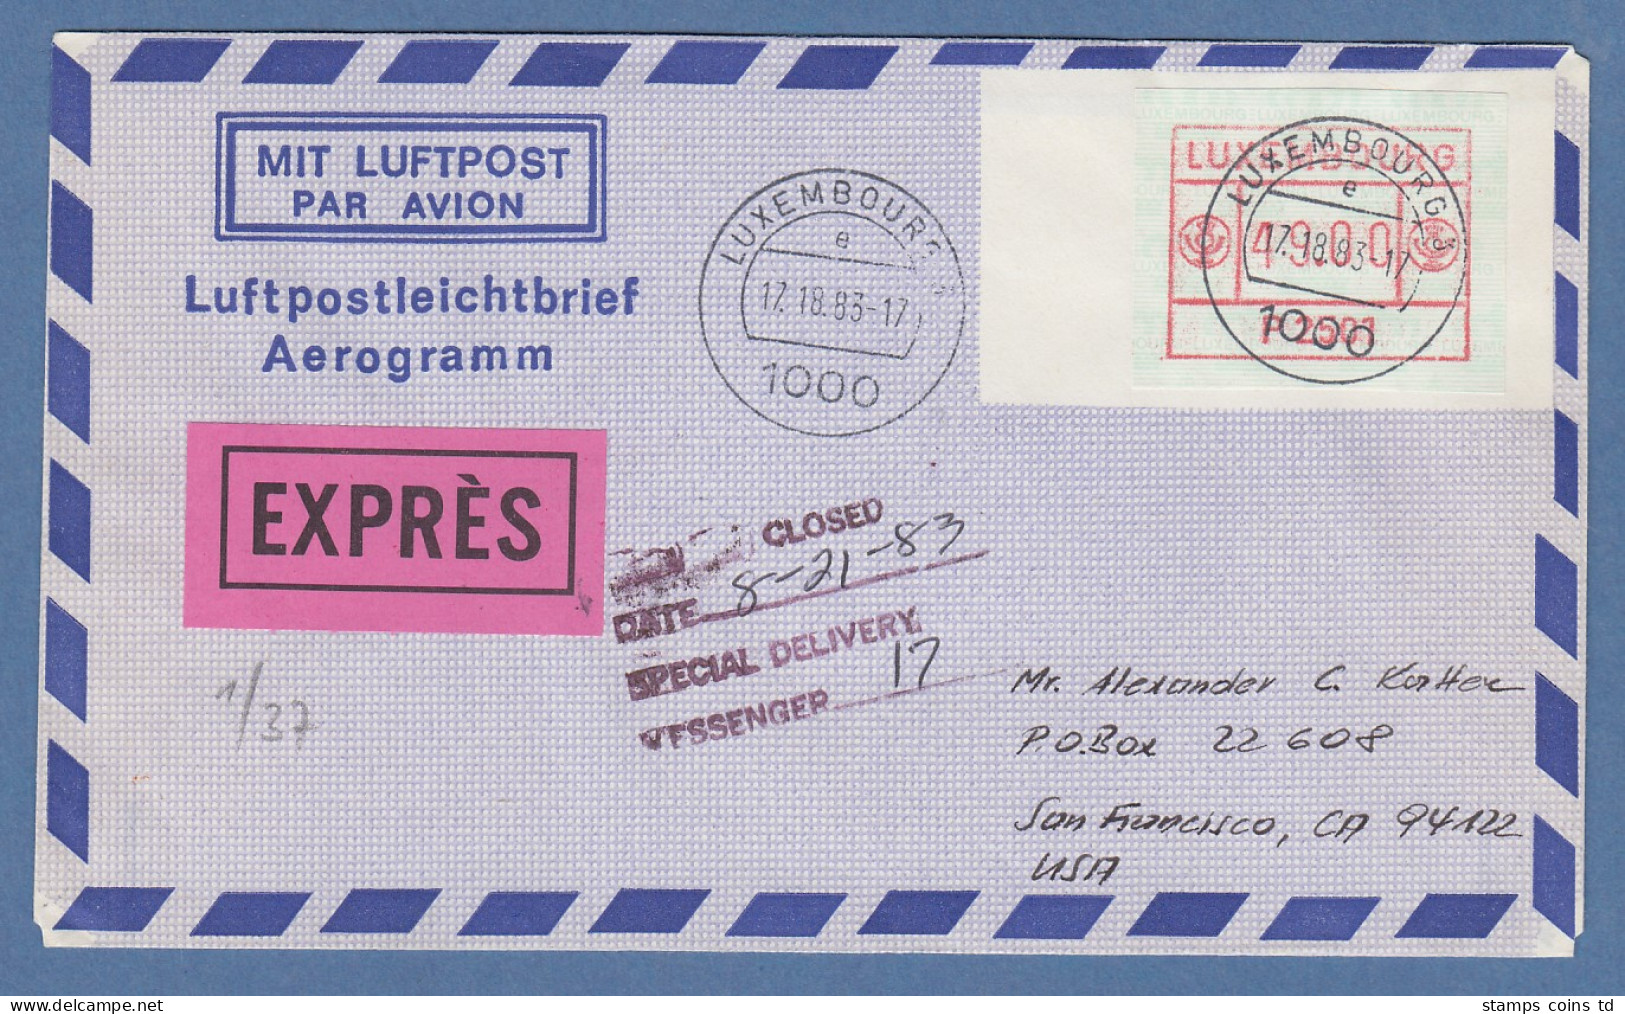 Luxemburg ATM P2501 Wert 49 Auf Aerogramm In Die USA,  O 17.18.83  !!! - Postage Labels